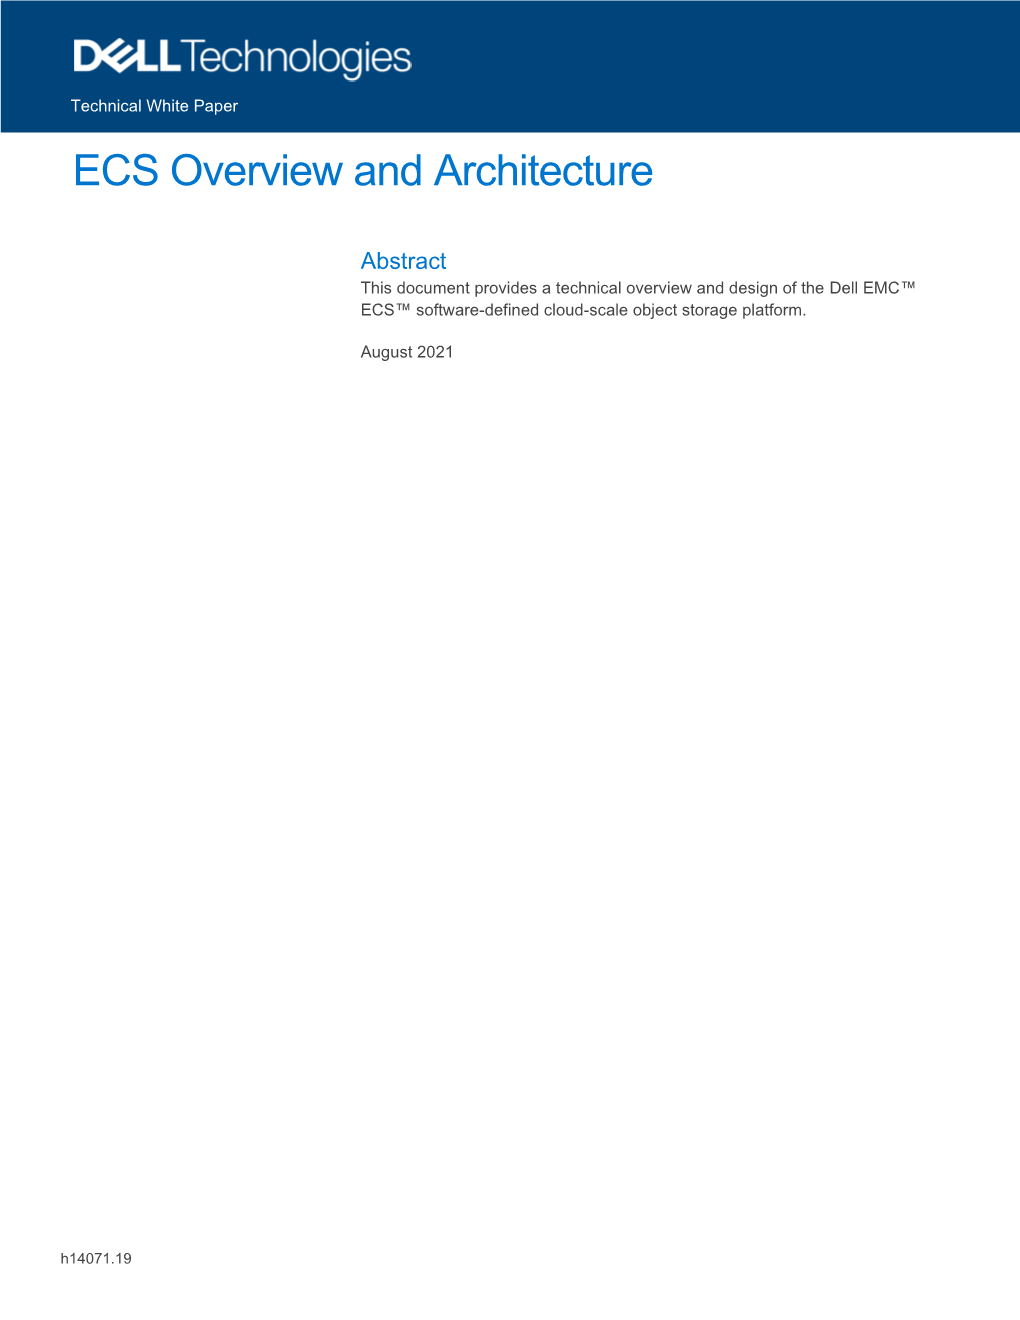 WP: ECS Overview & Architecture